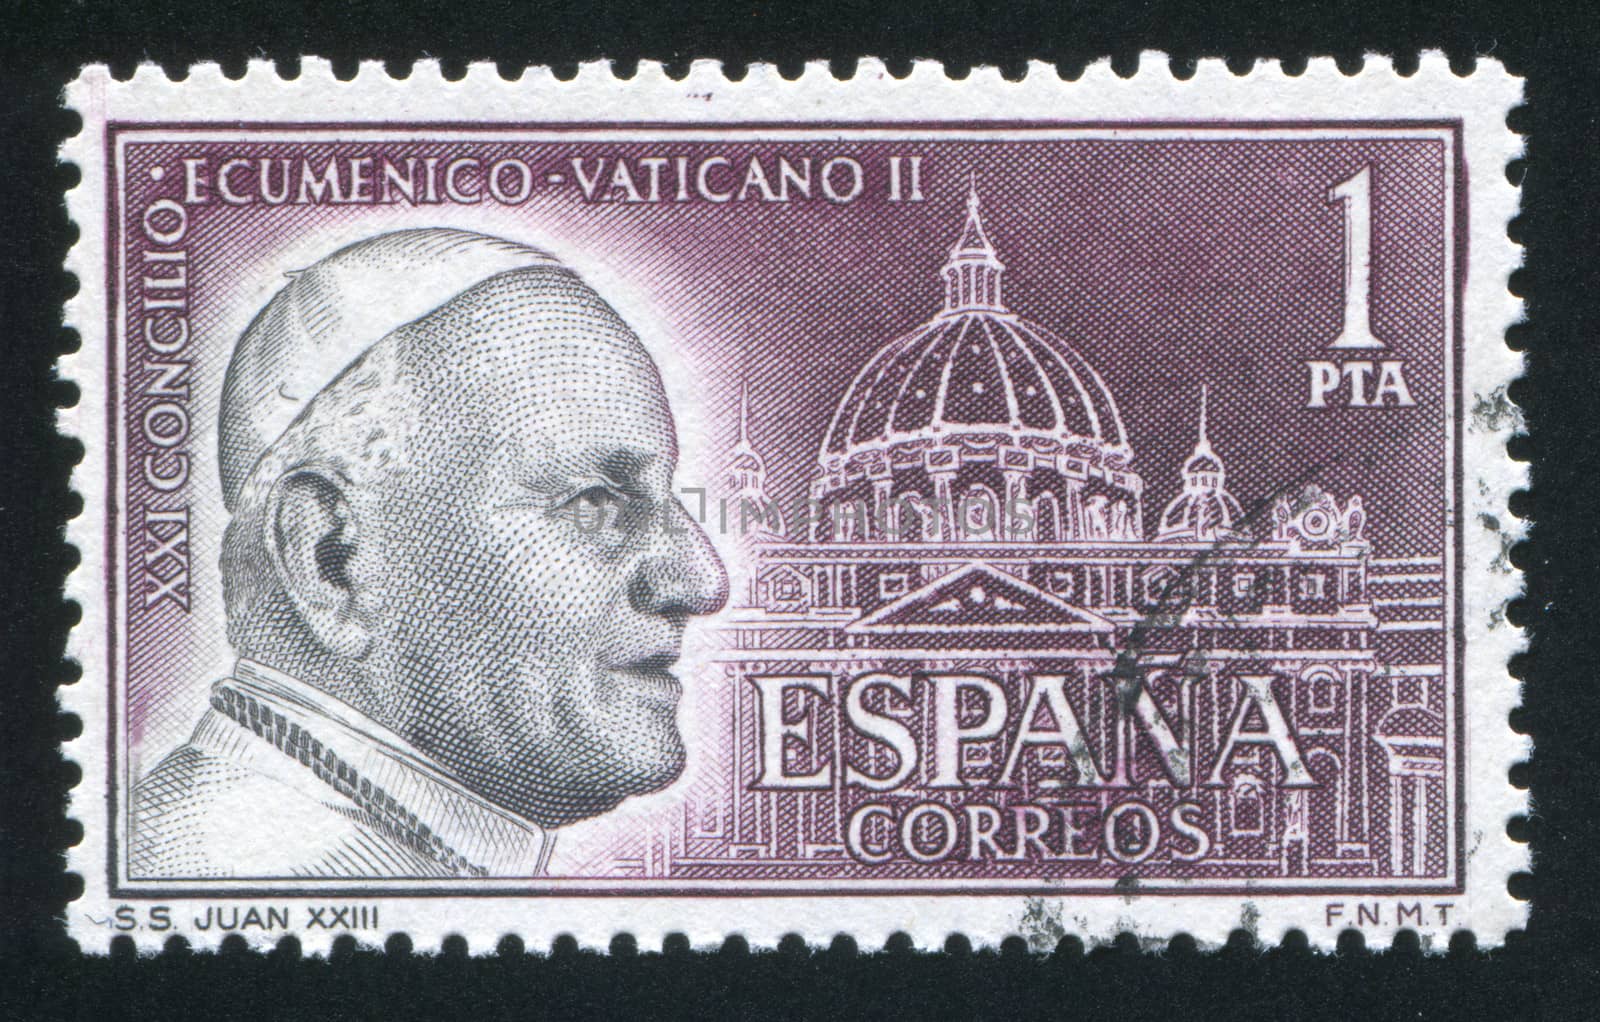 Pope John XXIII by rook